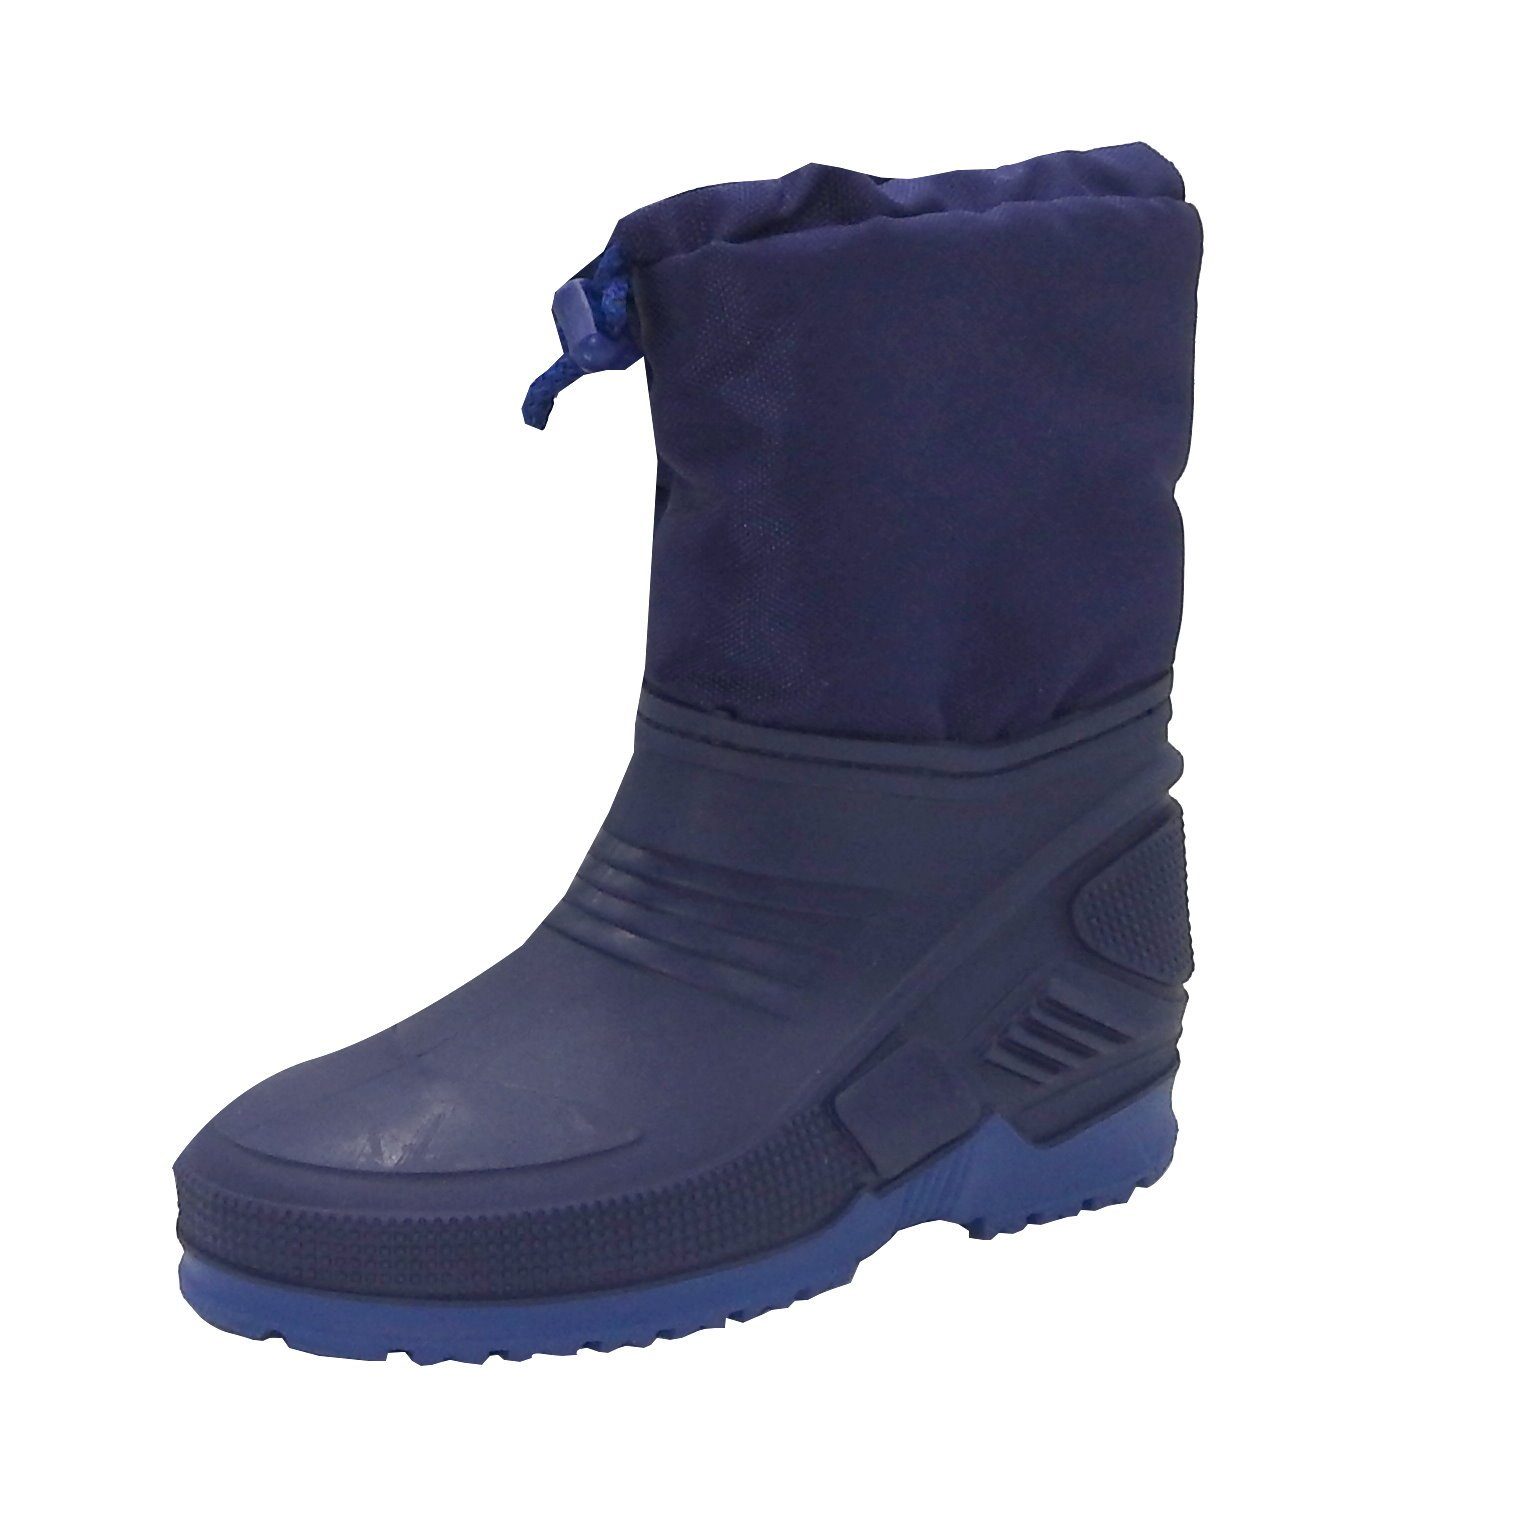 zand component gas dynamic24 Snowboots Kinder Gr. 29/30 Winter Schnee Stiefel Jungen Mädchen  Schuhe Boots blau